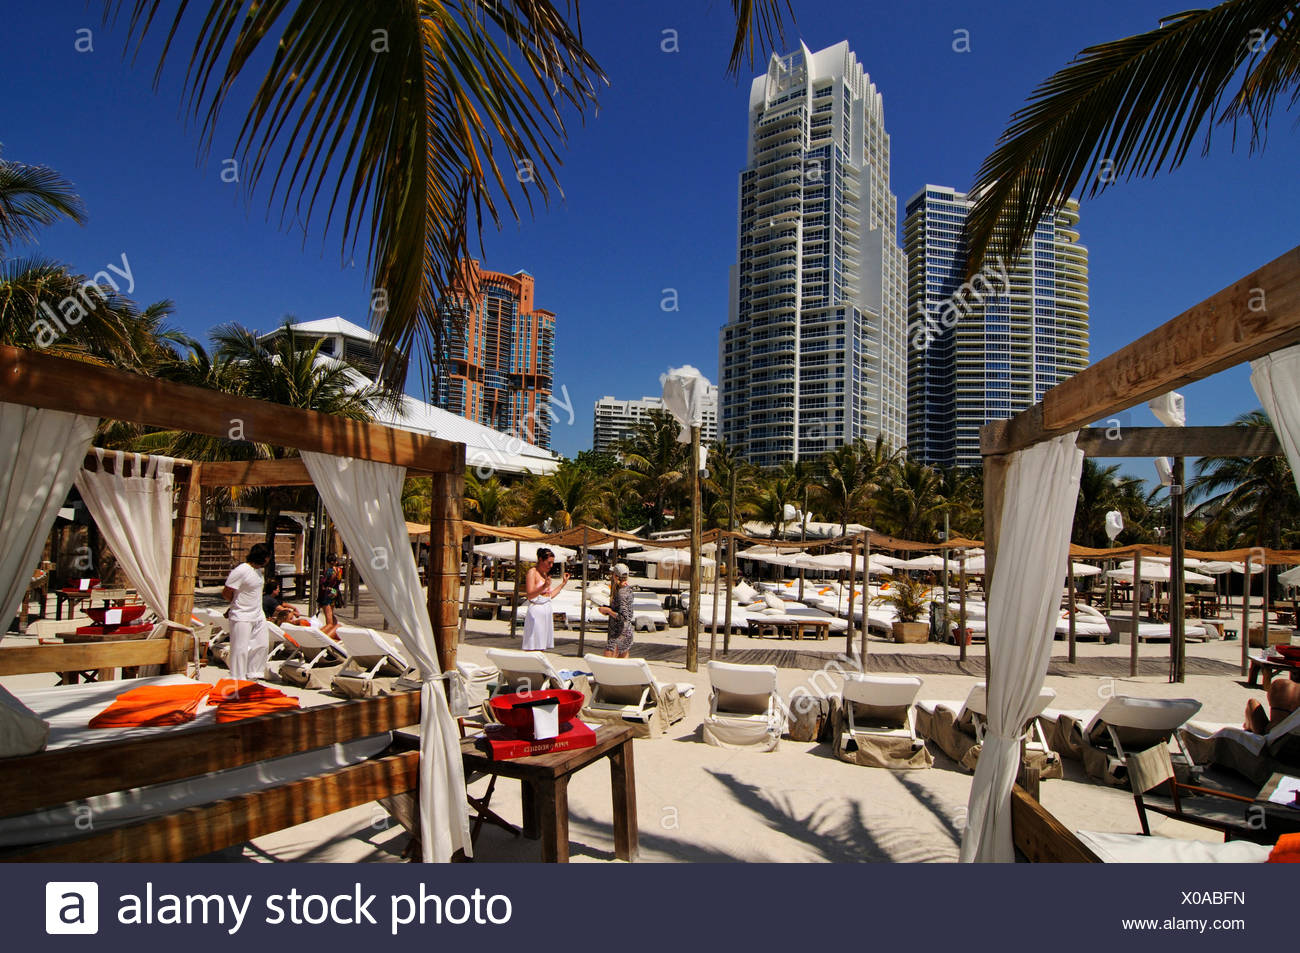 Nikki Beach Restaurant, Miami South Beach, Art Deco district, Florida, USA Stock Photo ...